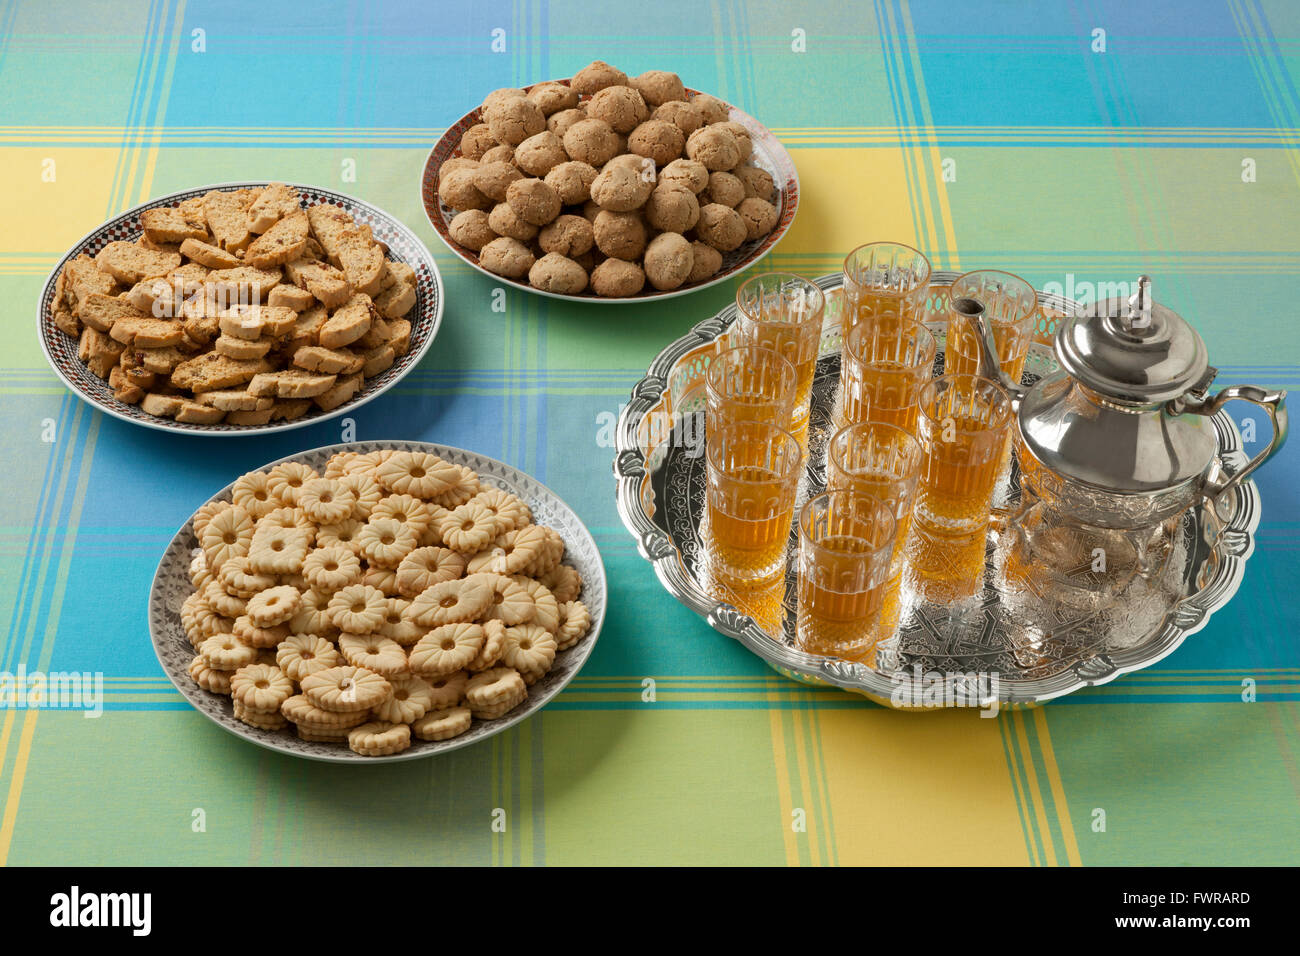 Platos festivos marroquí con té y galletas caseras Foto de stock